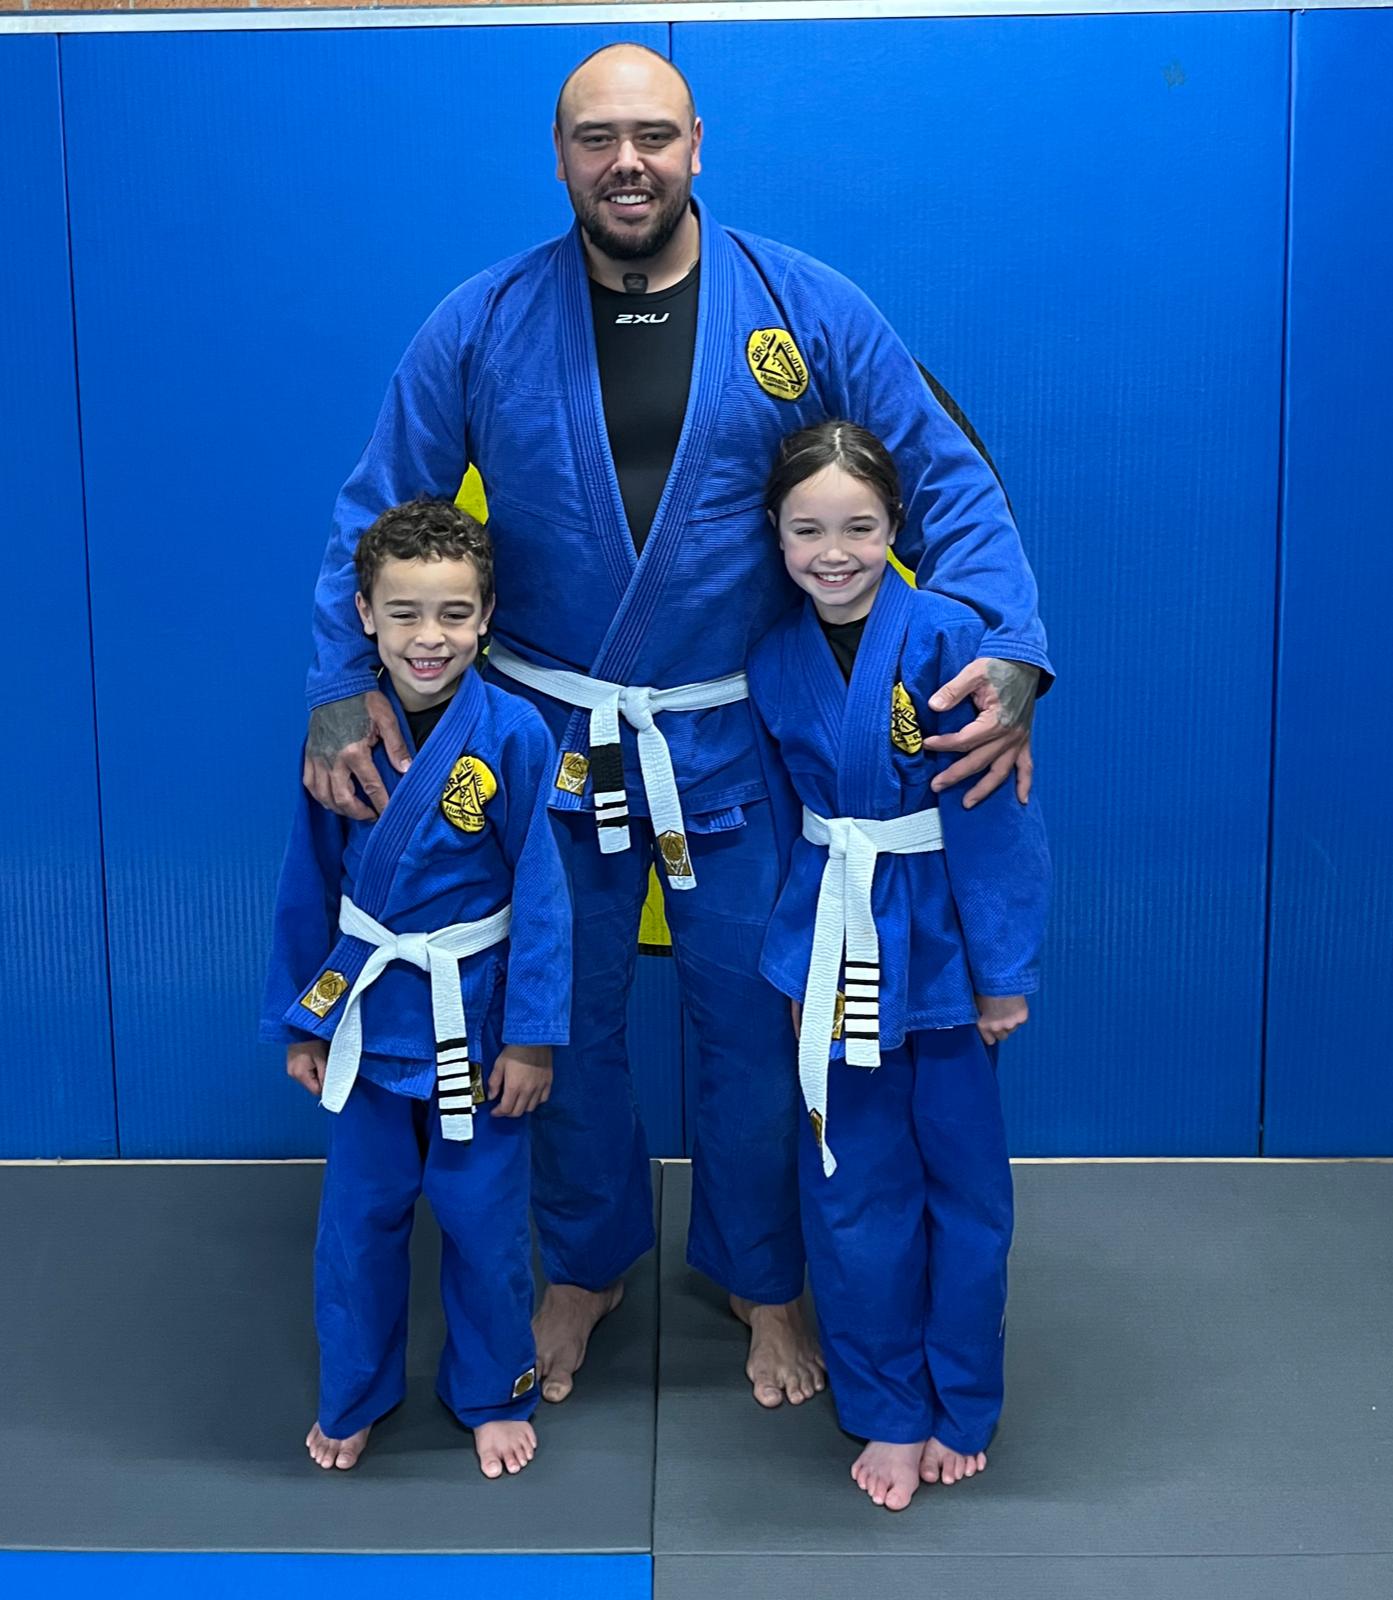 Father and kids in Jiu jitsu